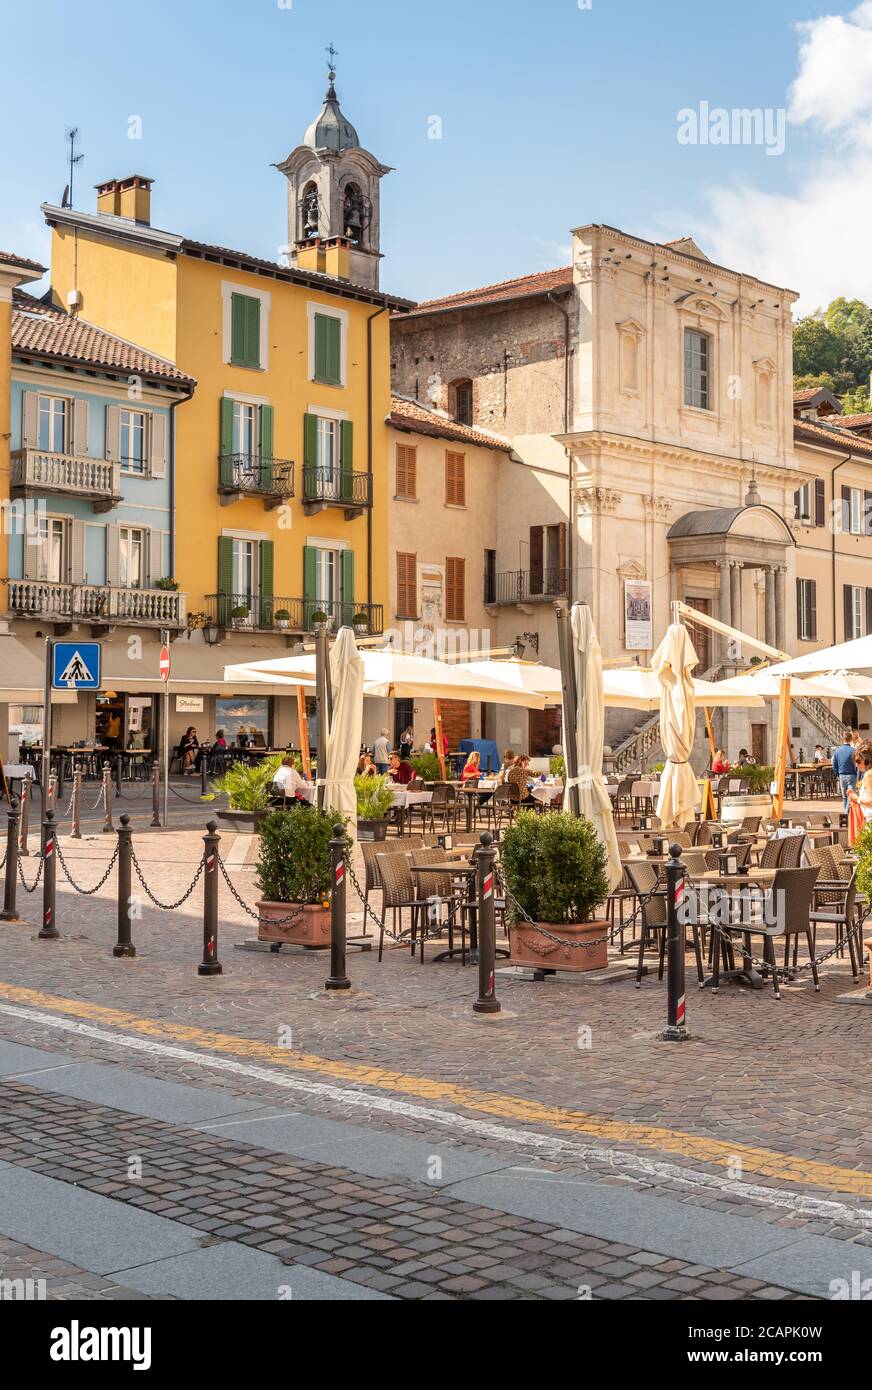 Arona, Piémont, Italie - 25 septembre 2019: Vue sur la place centrale - Piazza Del Popolo avec des bars traditionnels, des restaurants et des boutiques dans le centre d'Aron Banque D'Images